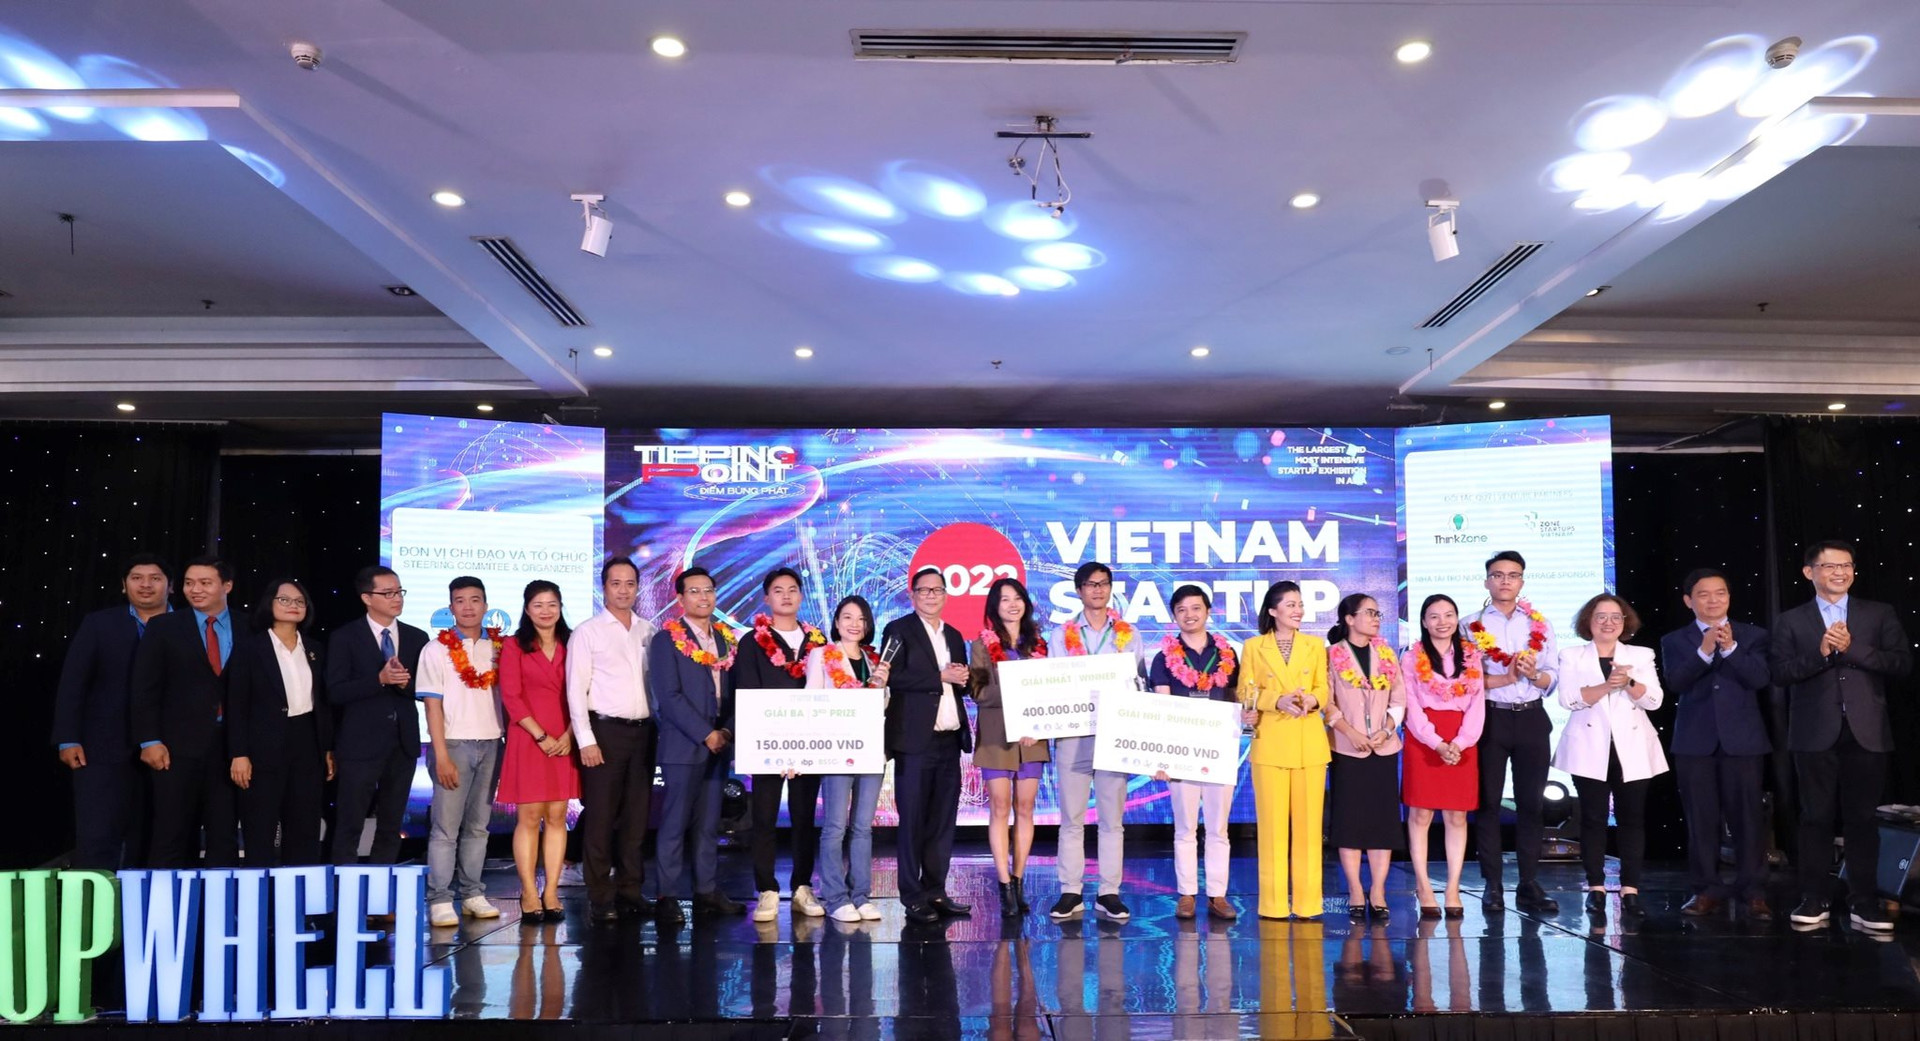 Dự án mới của cựu sếp Grab cùng nhiều startup nổi tiếng đua tranh giải nhất 100.000 USD của Qualcomm Việt Nam - Ảnh 3.